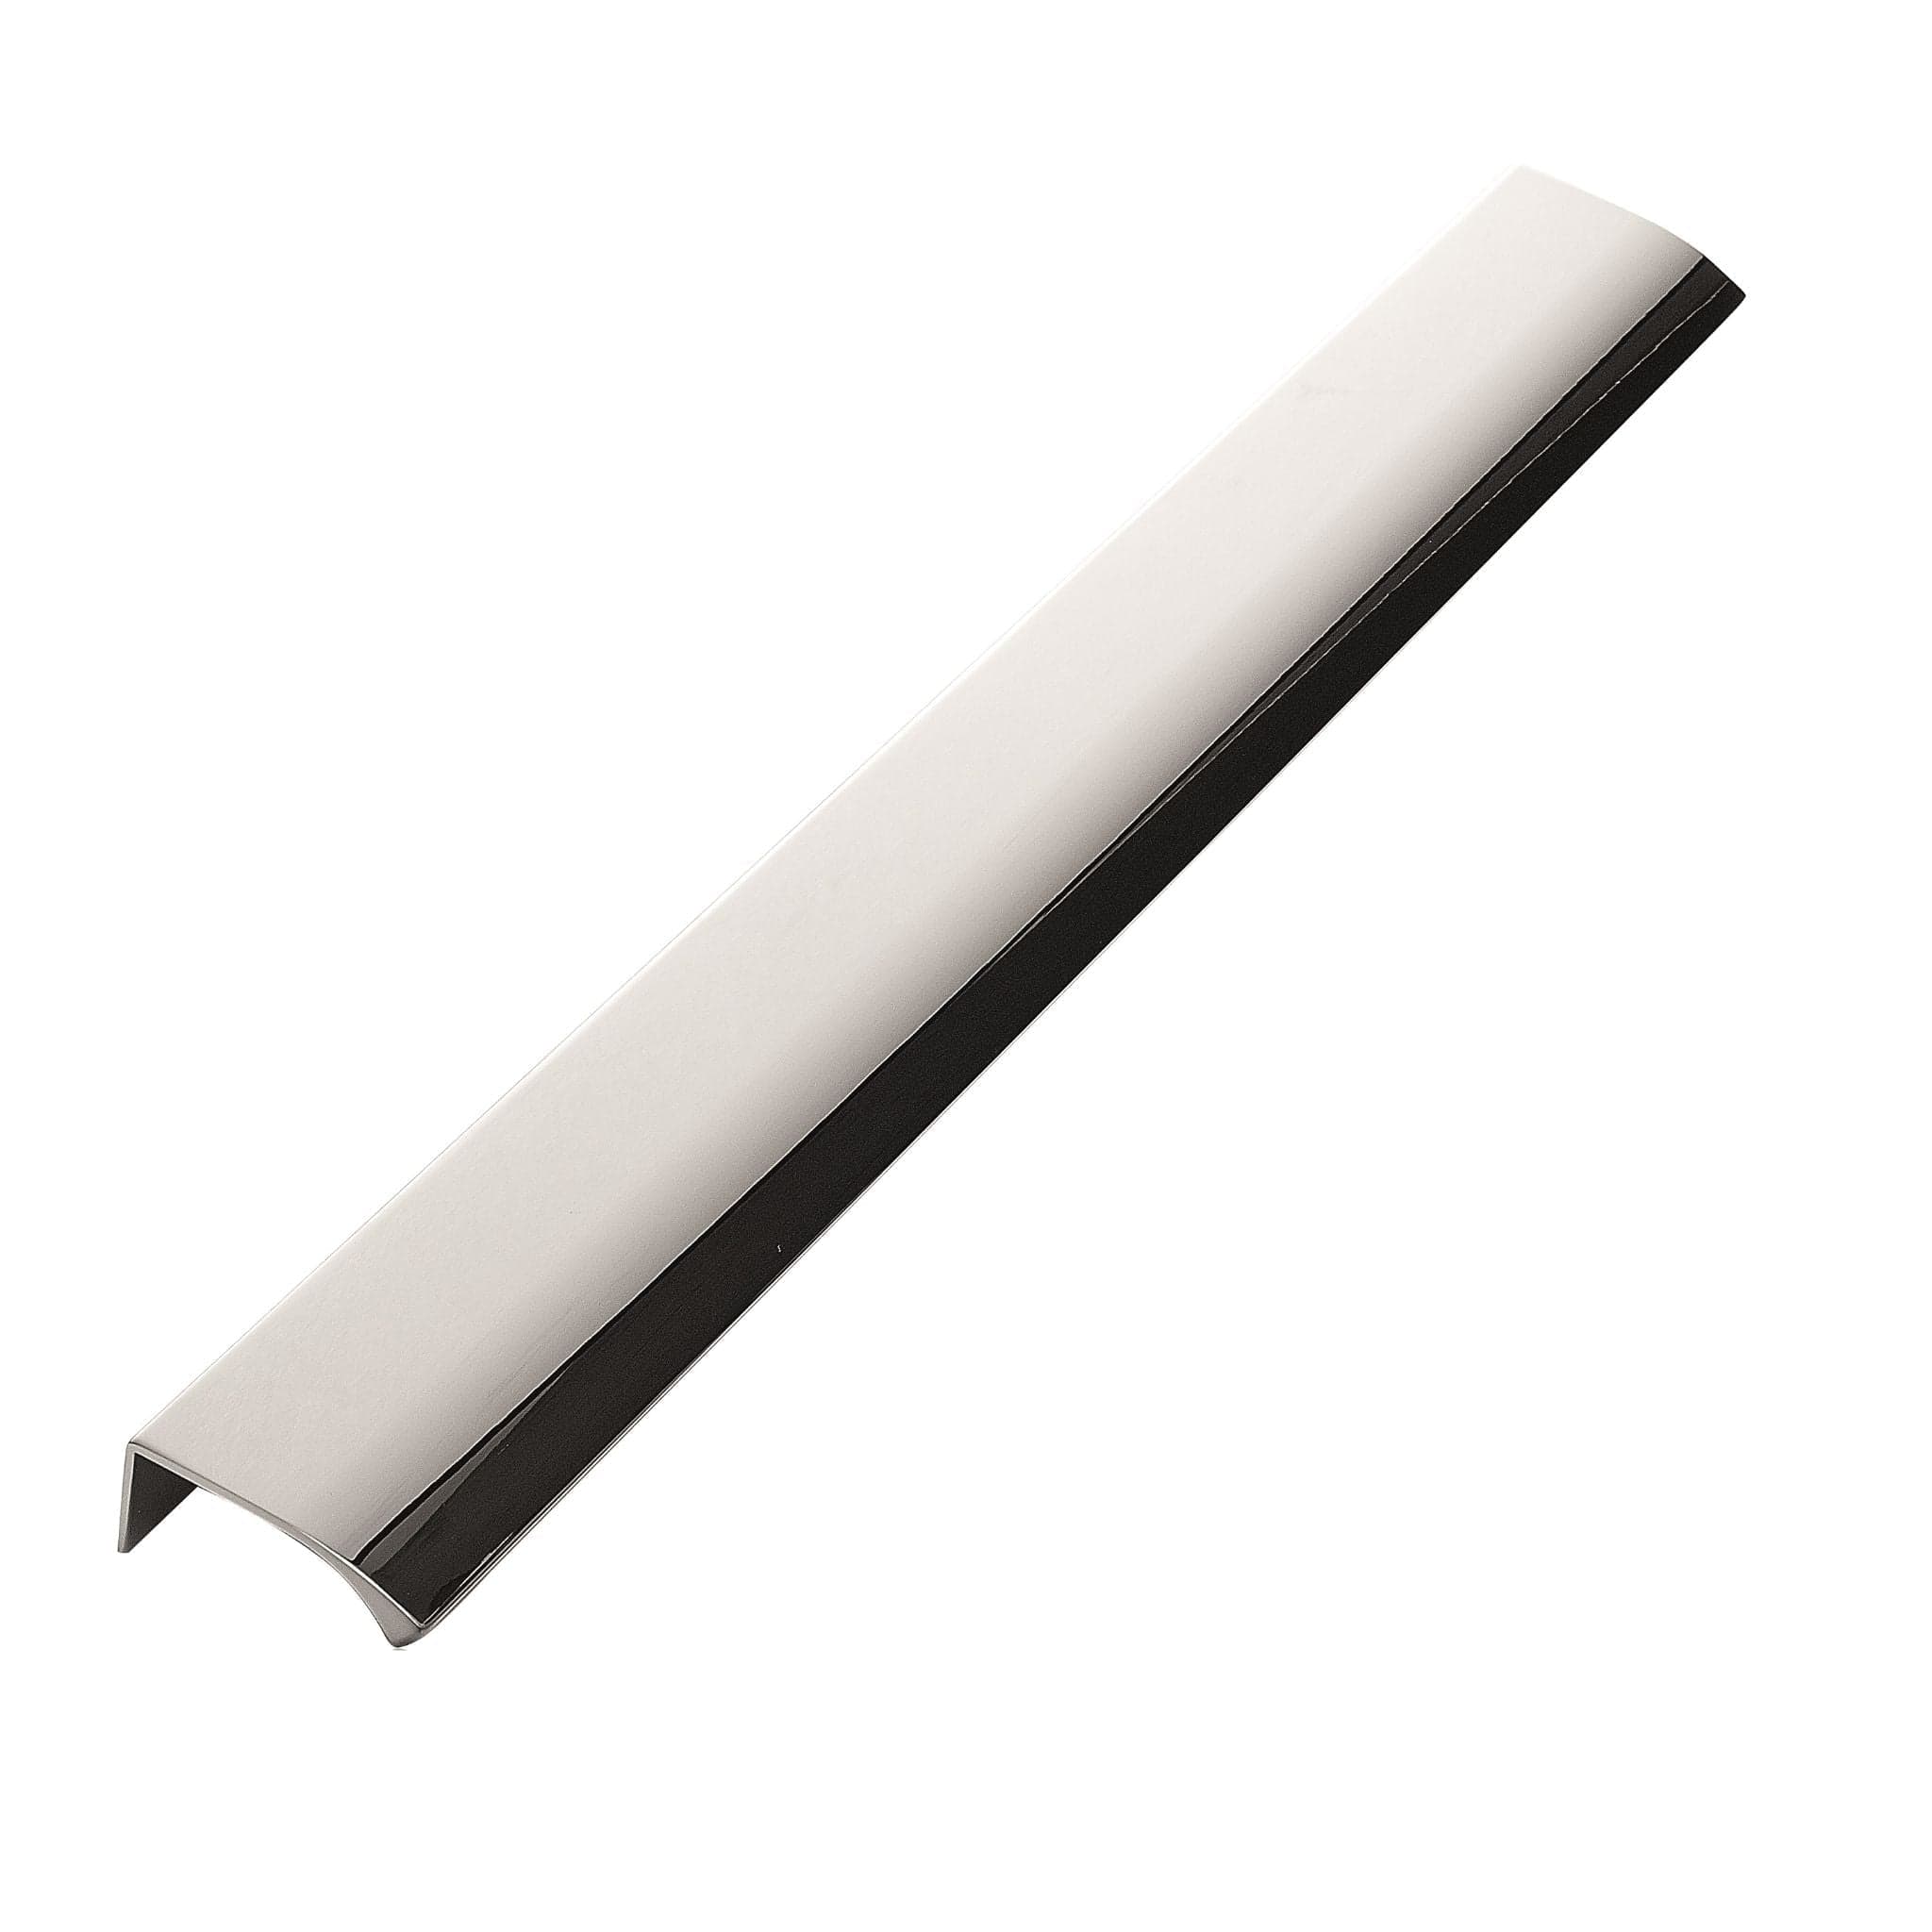 Edge Straight | Greb i Blank Krom L 350 mm (C/C: 2x160 mm) Furnipart FP-419720350-08.1 FINICC